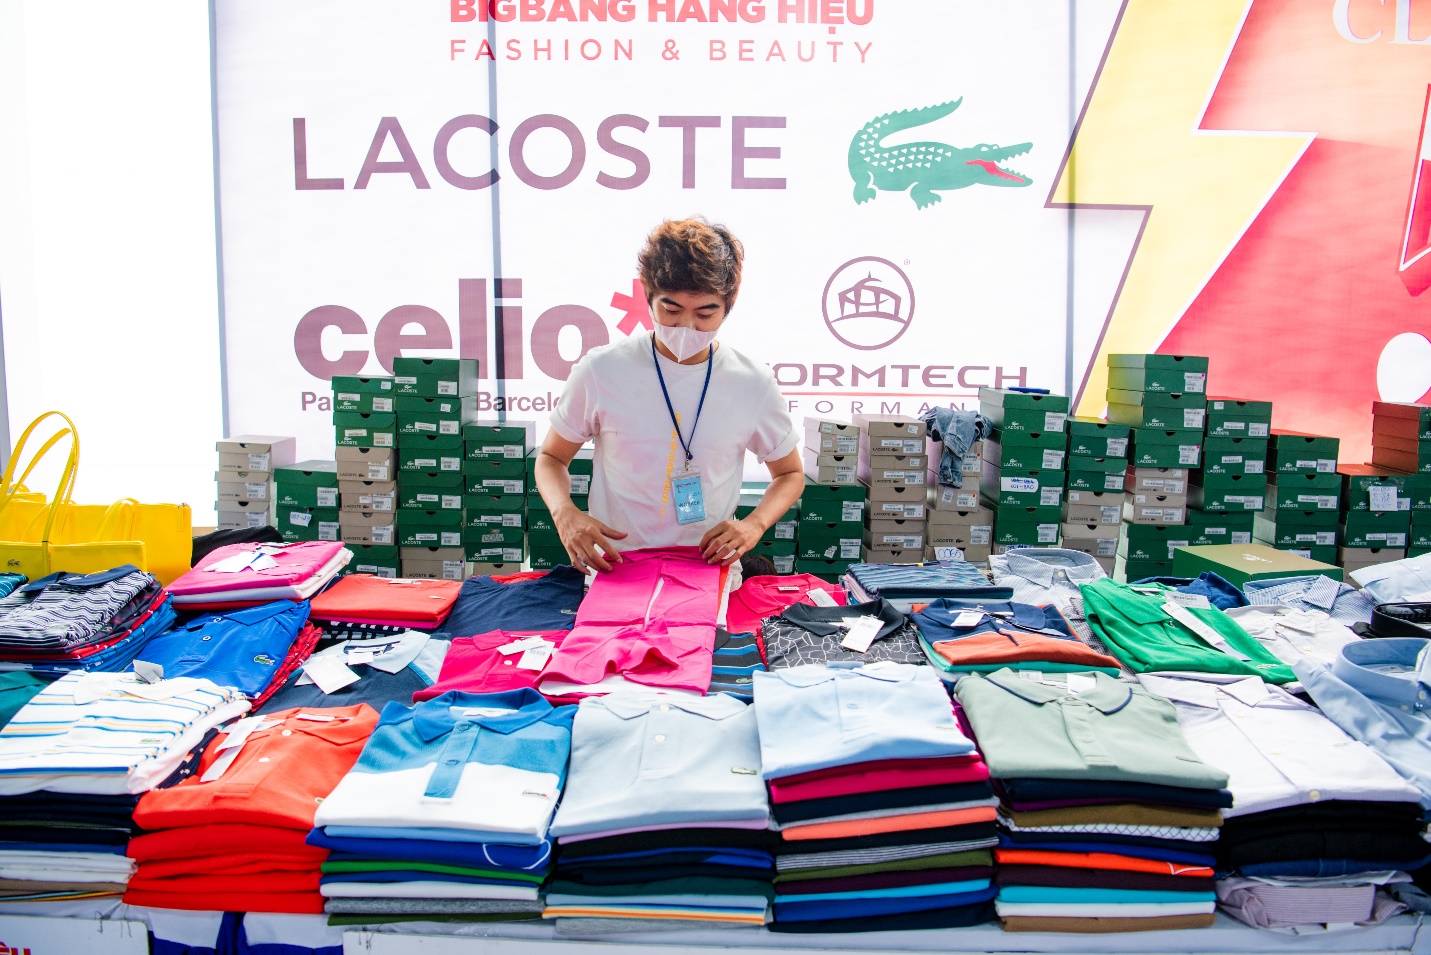 Hàng ngàn deal hot từ thương hiệu Lacoste, Nike Golf, Pierre Cardin…. với giá hấp dẫn chỉ có tại sự kiện